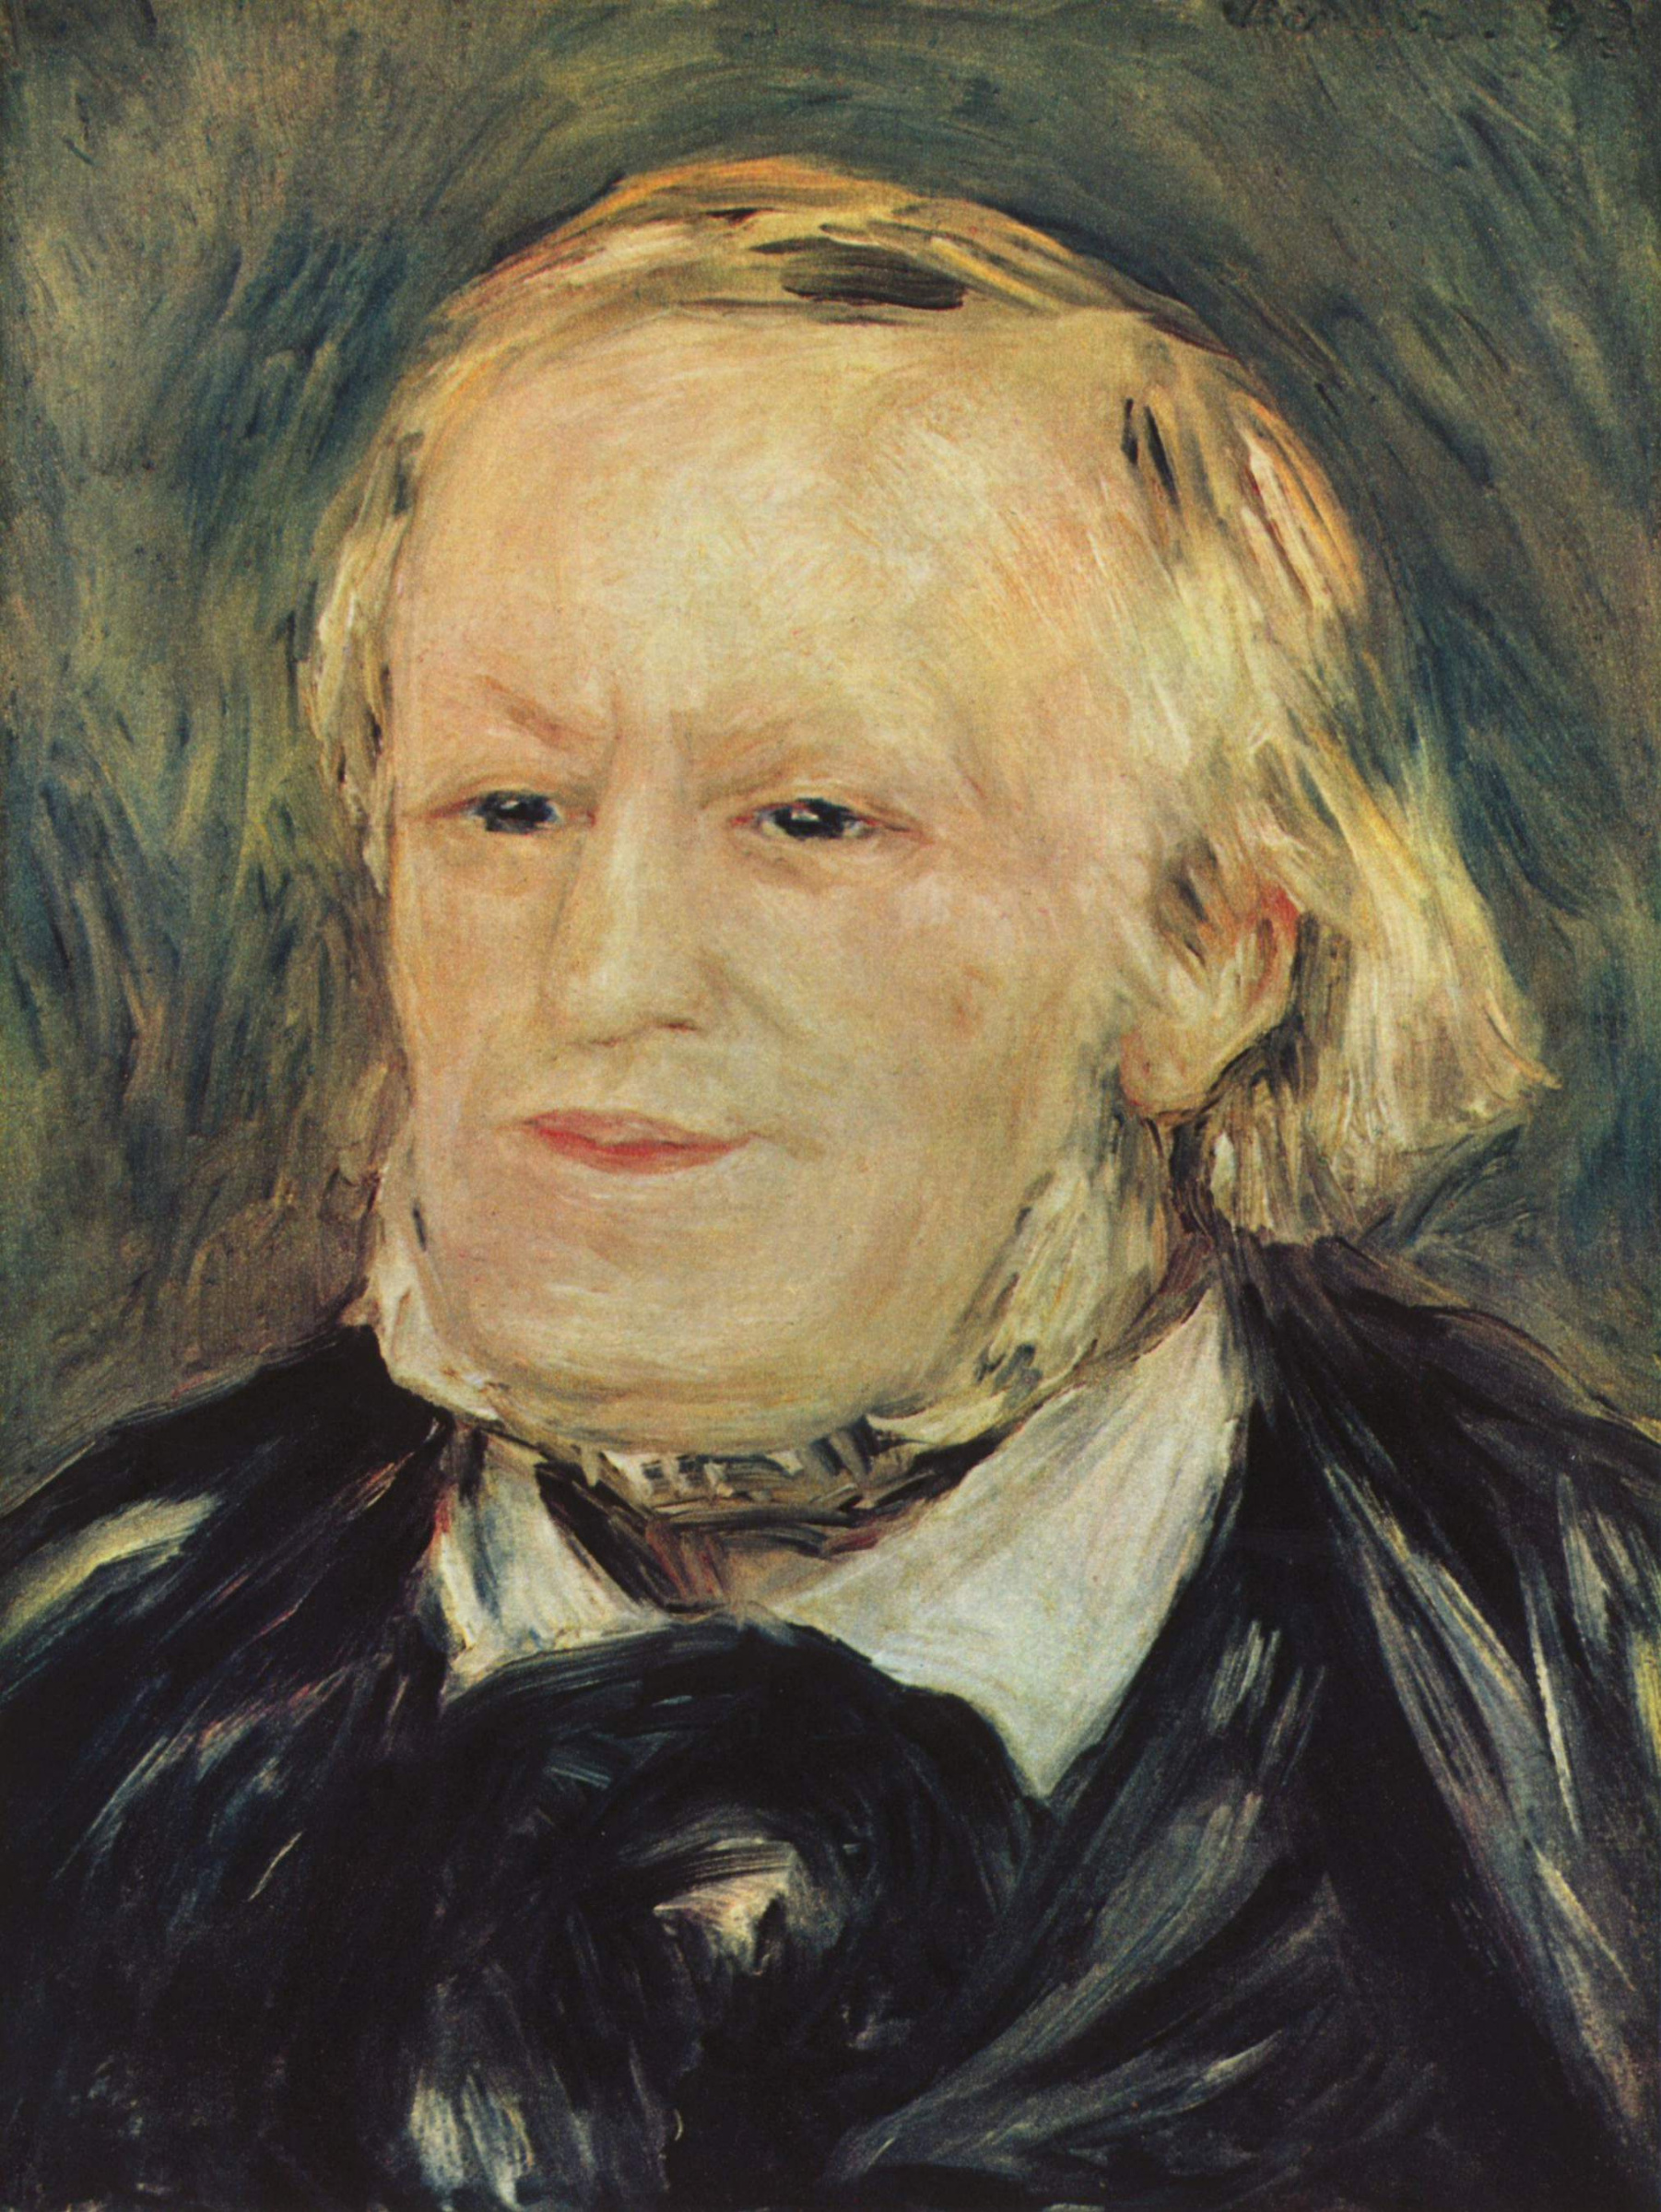 Buy digital version: Portrait Of Richard Wagner by Pierre-Auguste Renoir